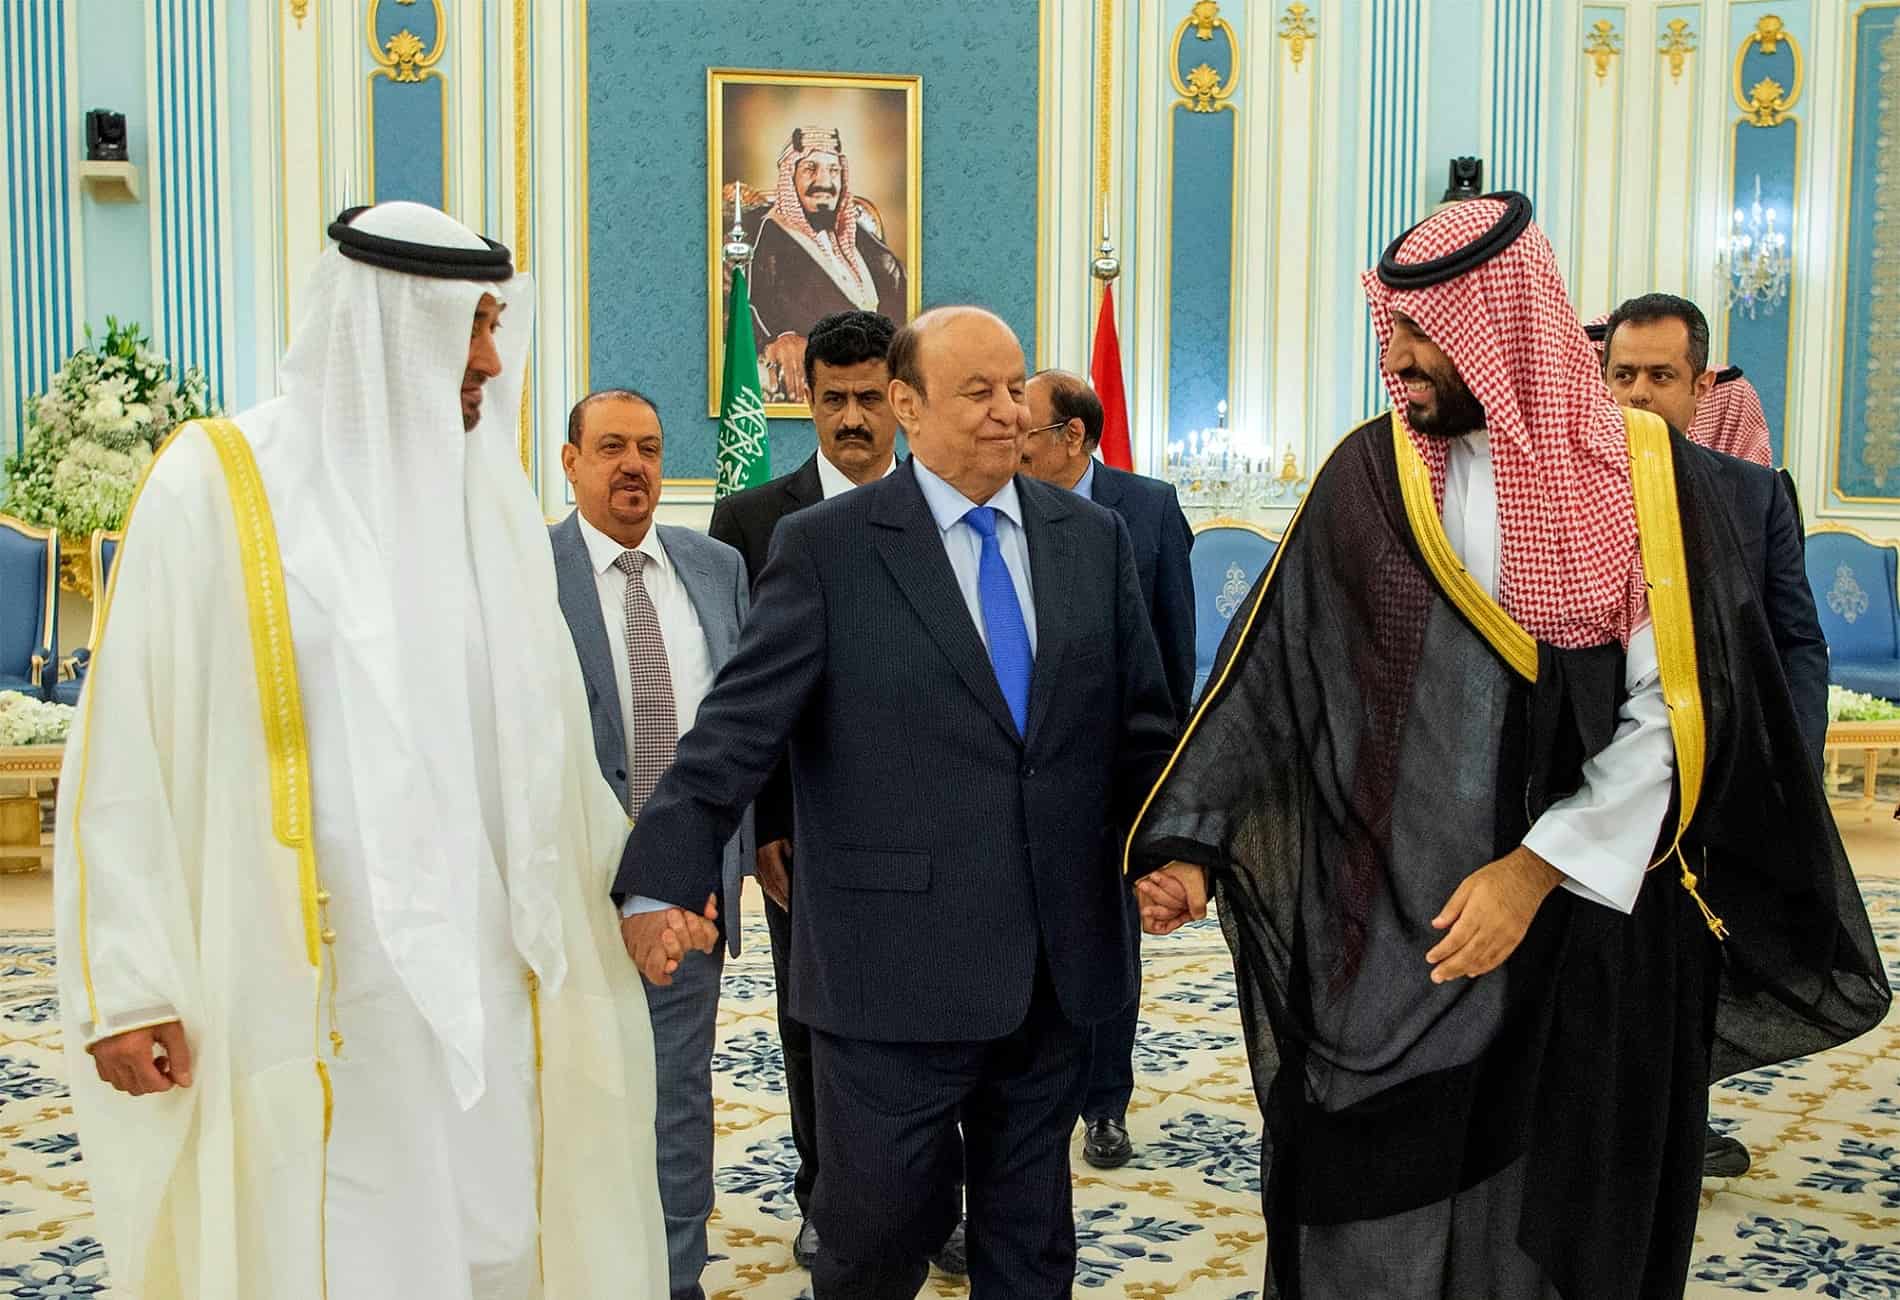 "يا هلا": اليمنيون يشكرون السعودية على اتفاق الرياض